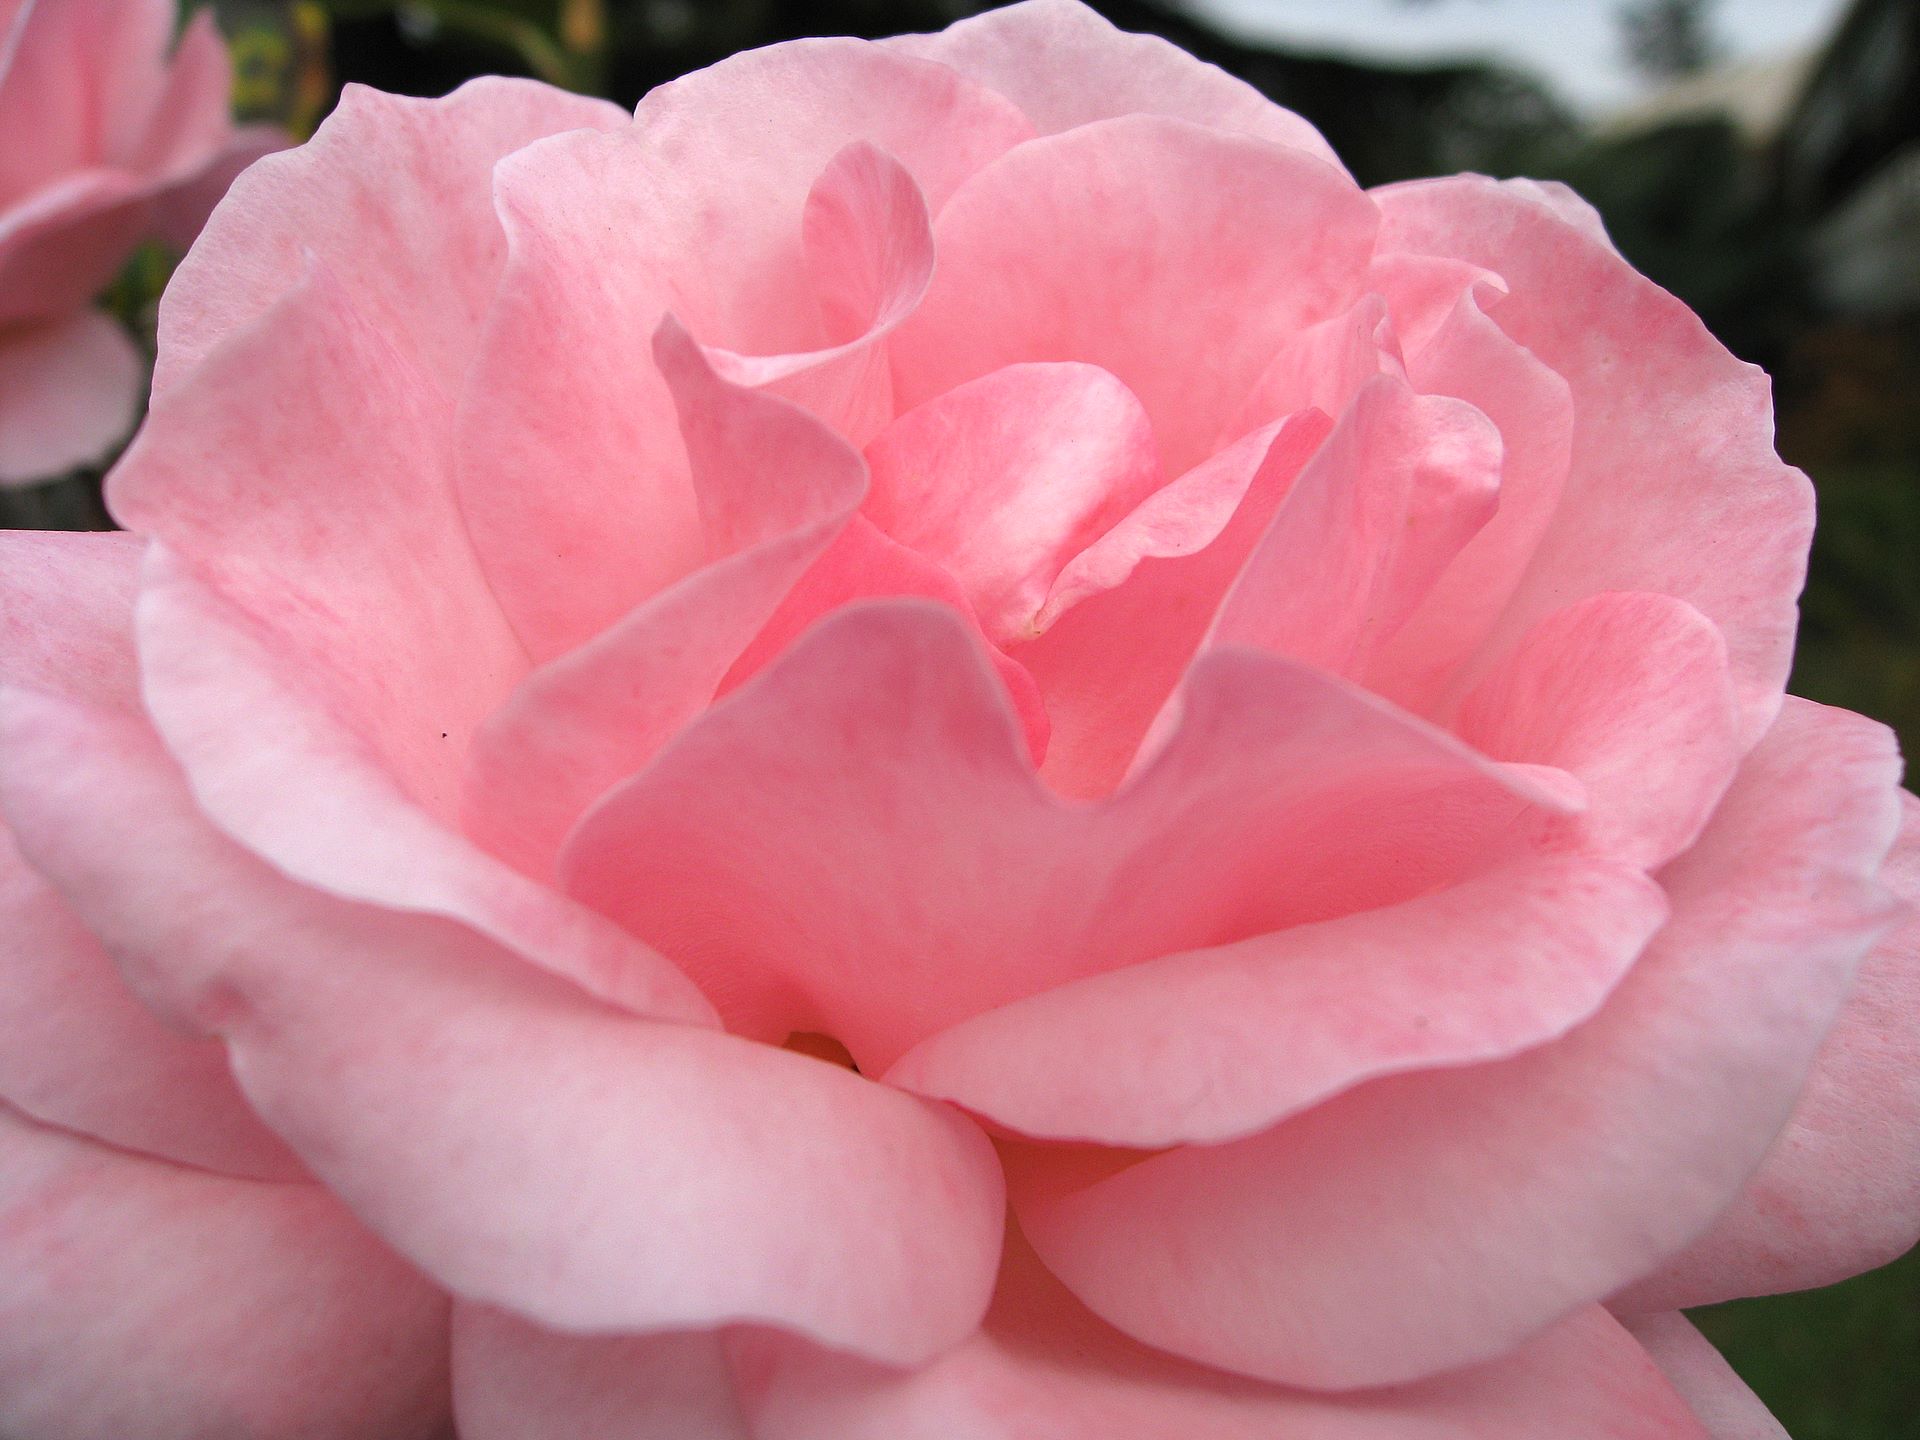 Rose Wallpaper, wild rose for your desktop in full high resolution 1920x1200